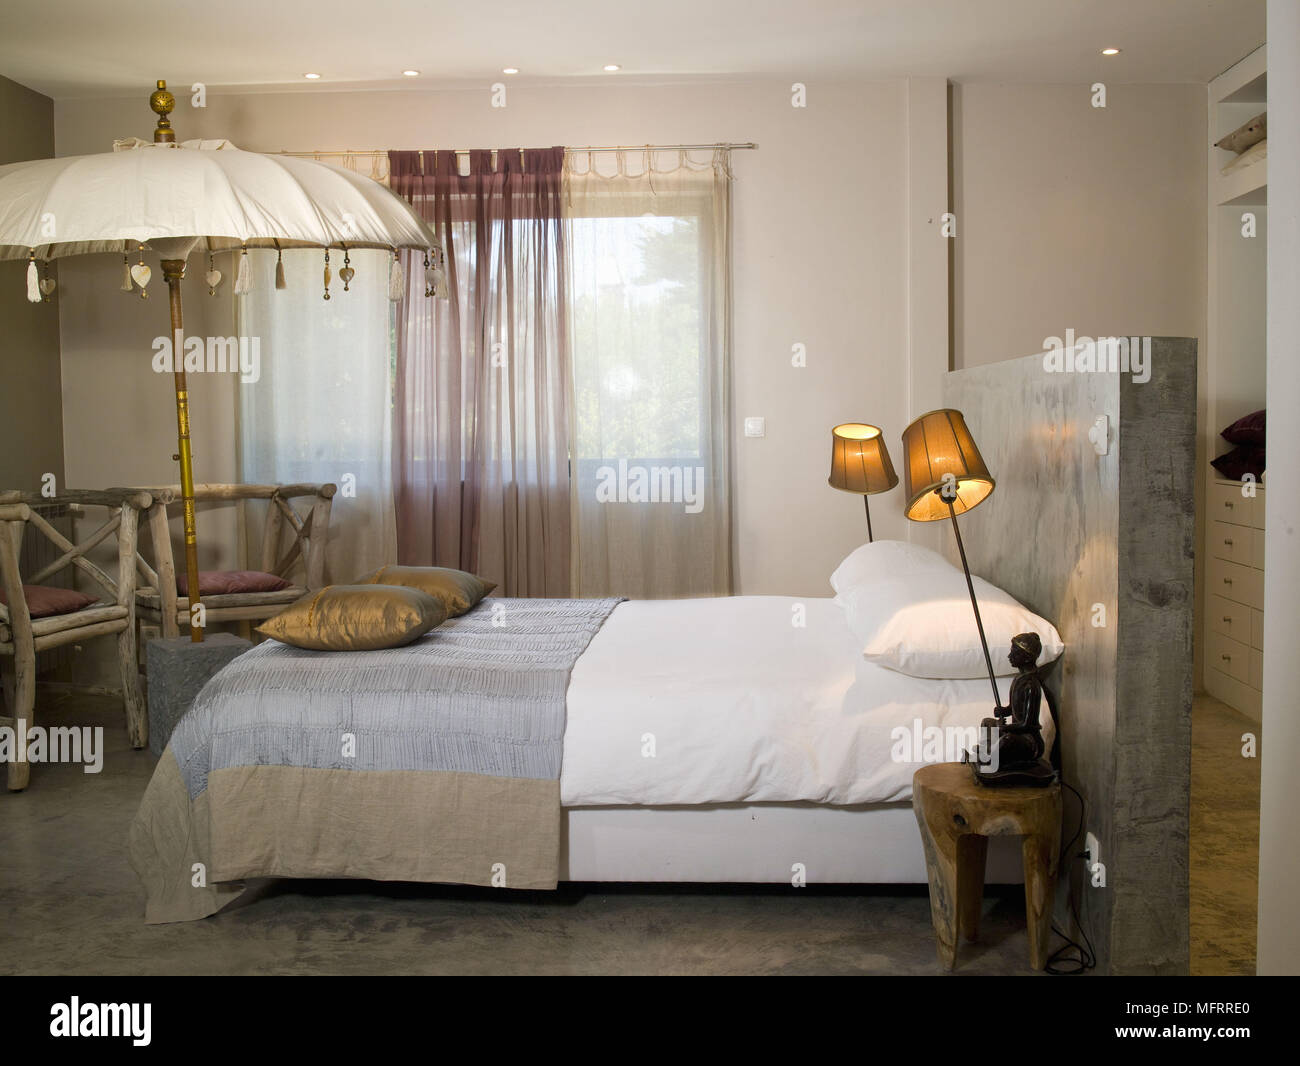 Accese le lampade al posto letto su tavoli laterali su entrambi i lati del letto matrimoniale Foto Stock